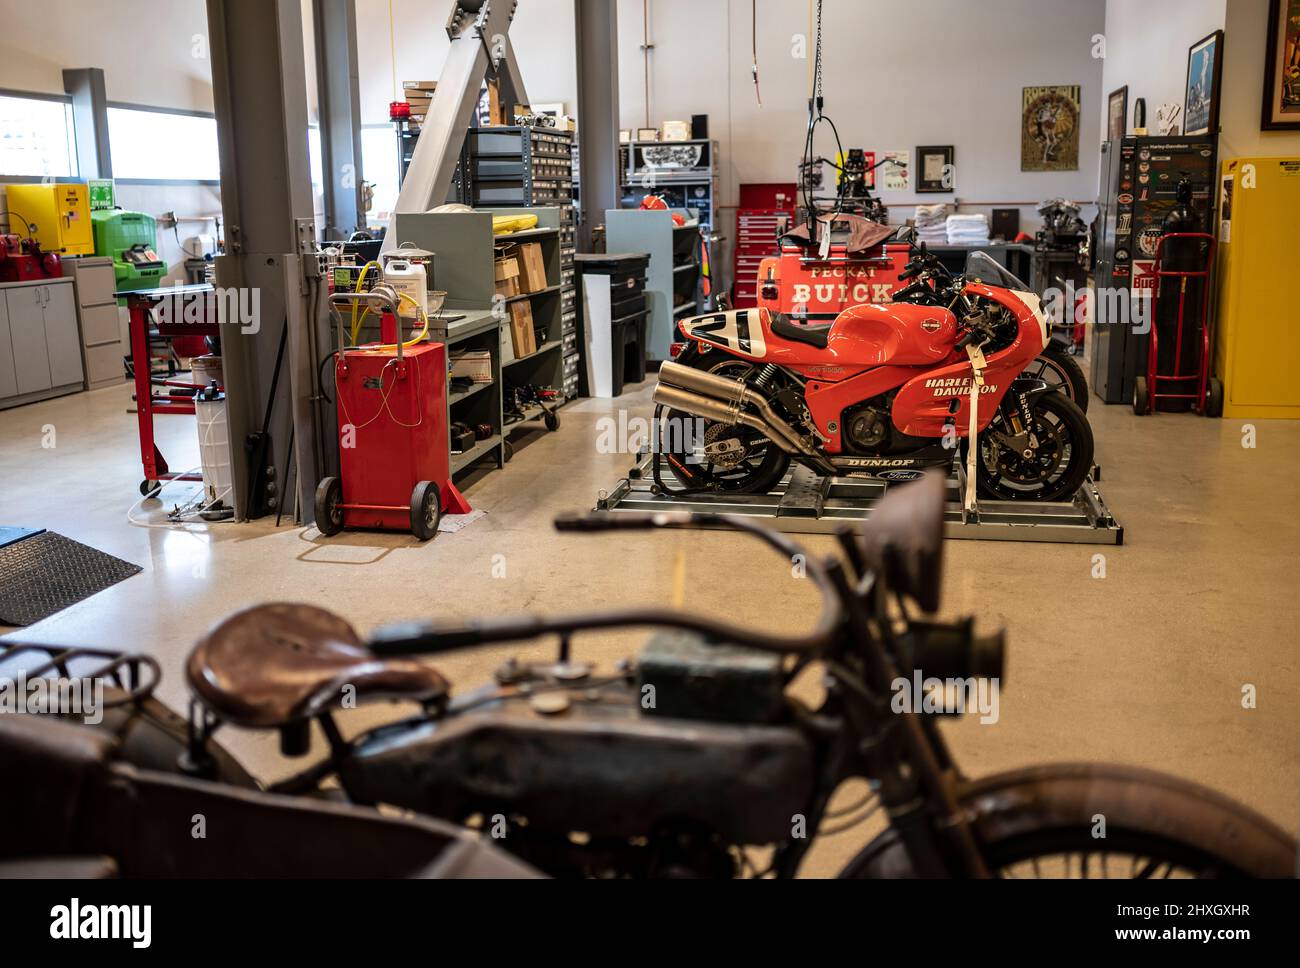 Atelier utilisé pour restaurer et préserver la collection Harley-Davidson située au musée Harley-Davidson à Milwaukee, Wisconsin, États-Unis Banque D'Images